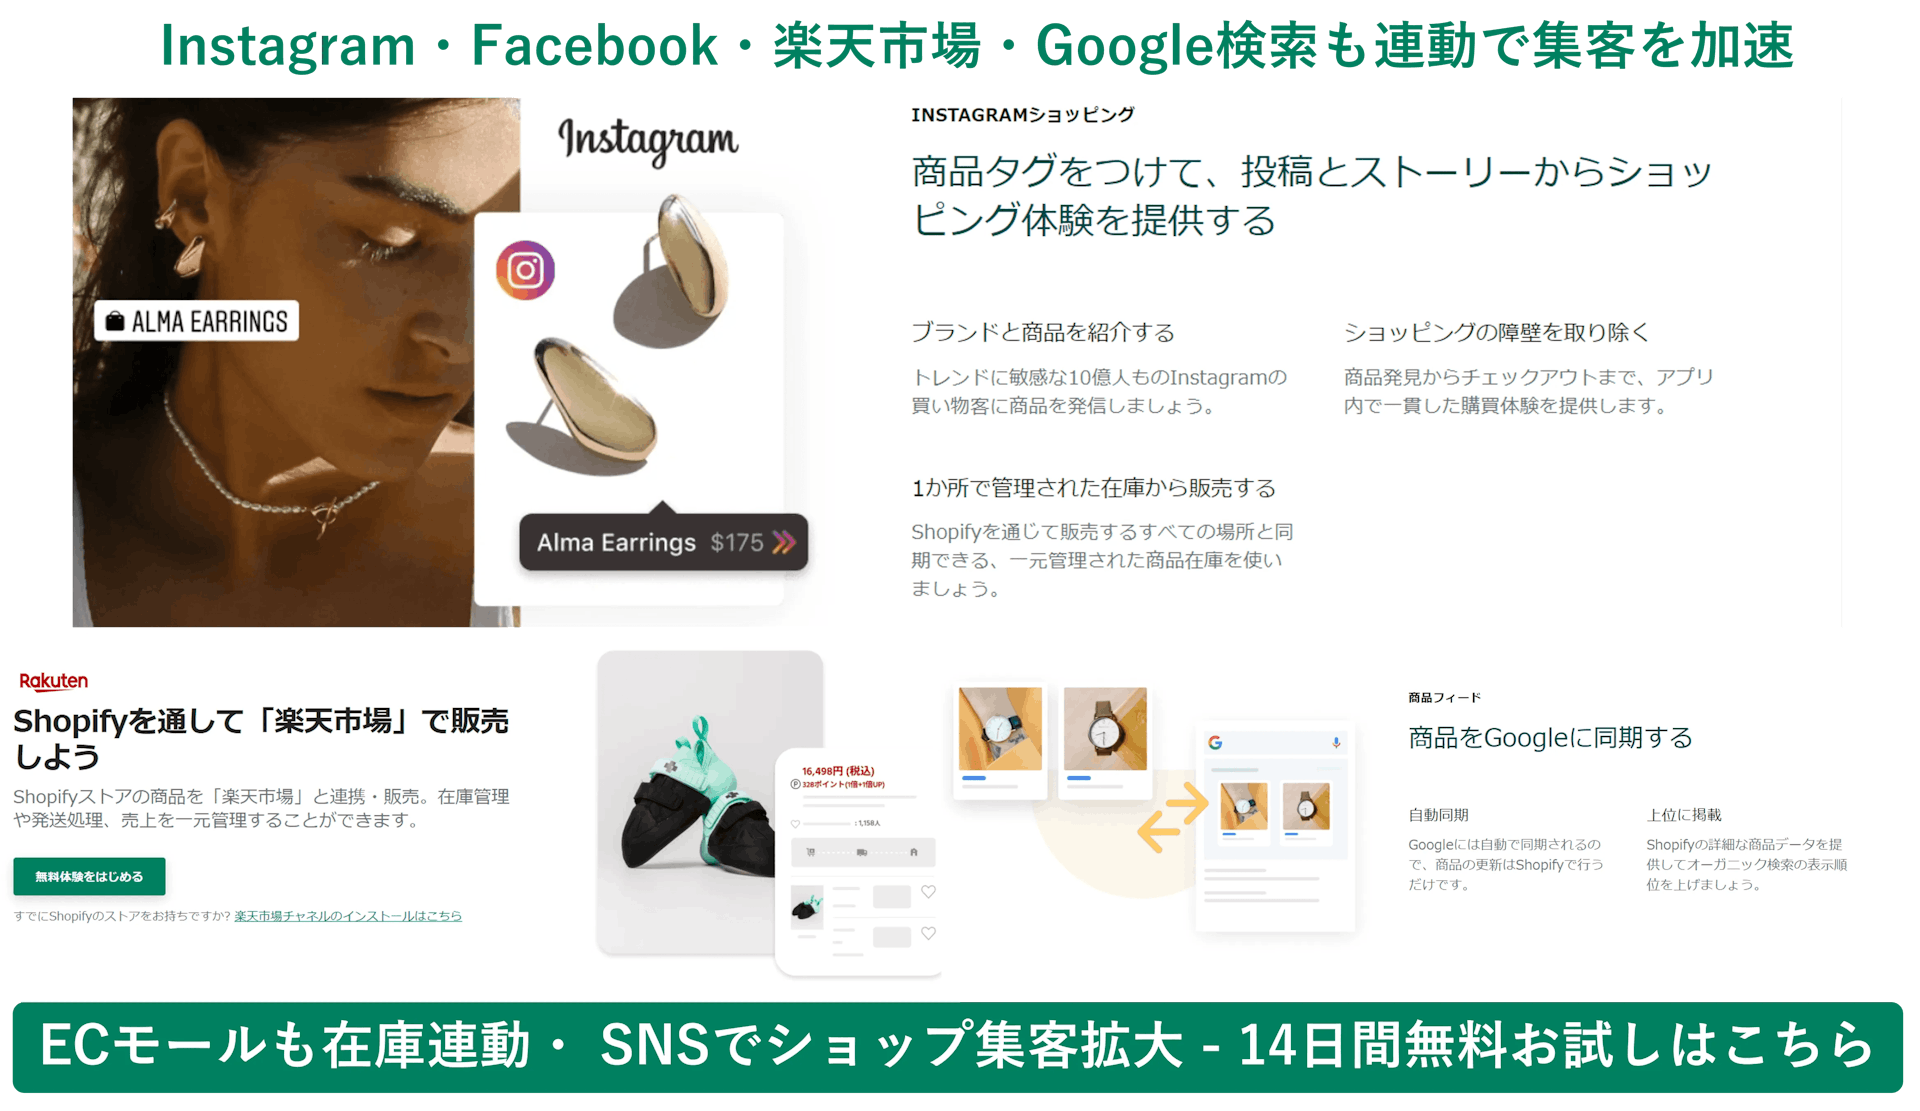 Shopify紹介画像の3枚目